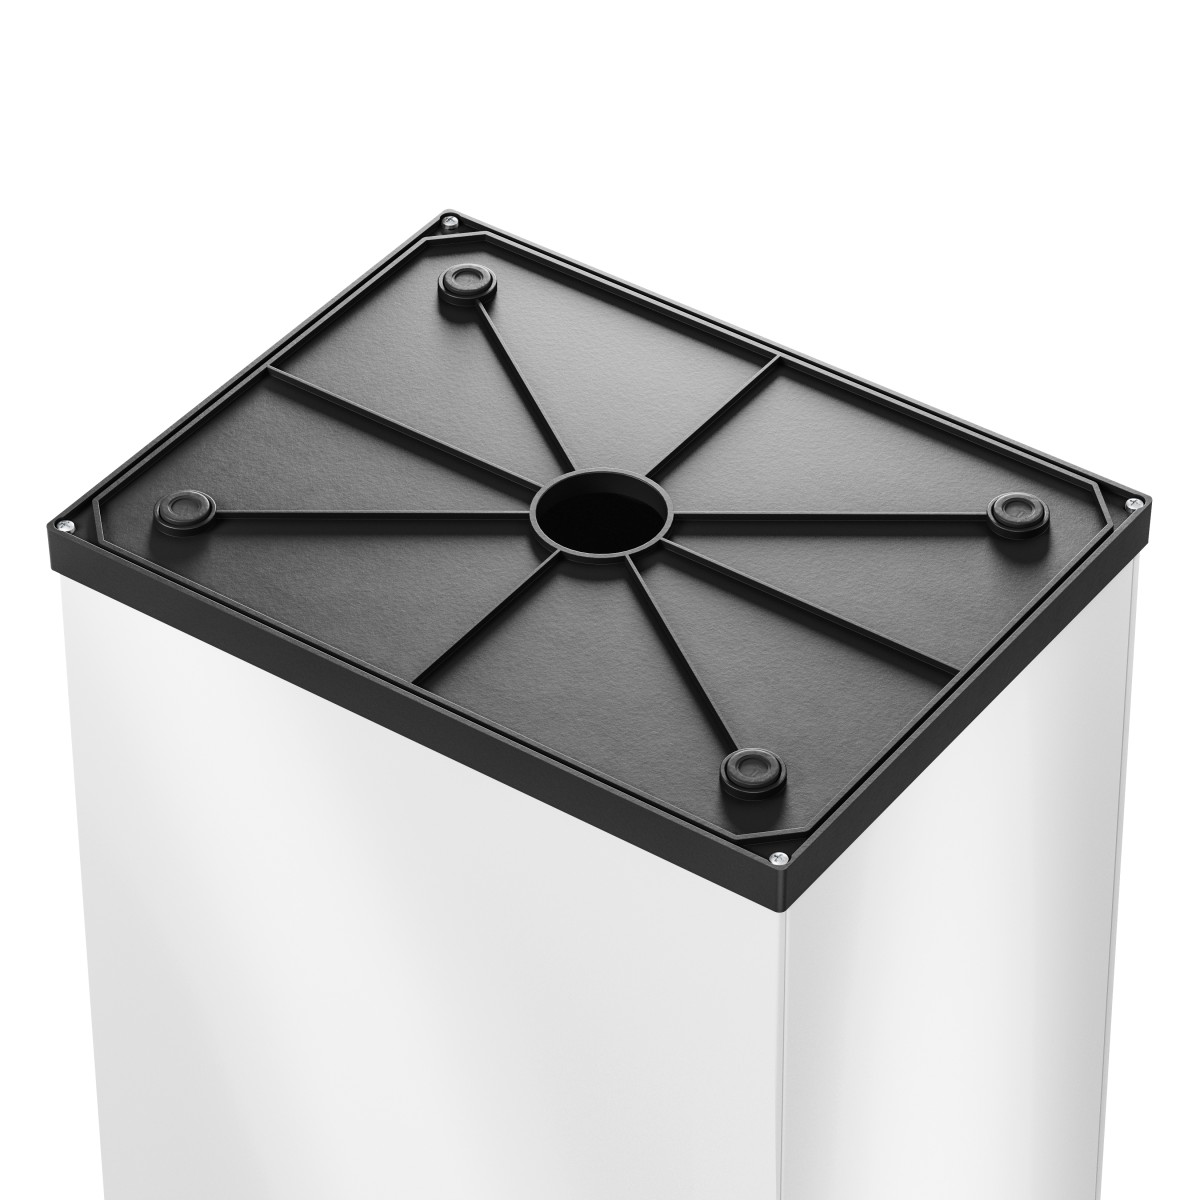 פח אשפה מלבני 52 ליטר למטבחים ומשרדים Big-Box Swing XL HAILO - צבע לבן